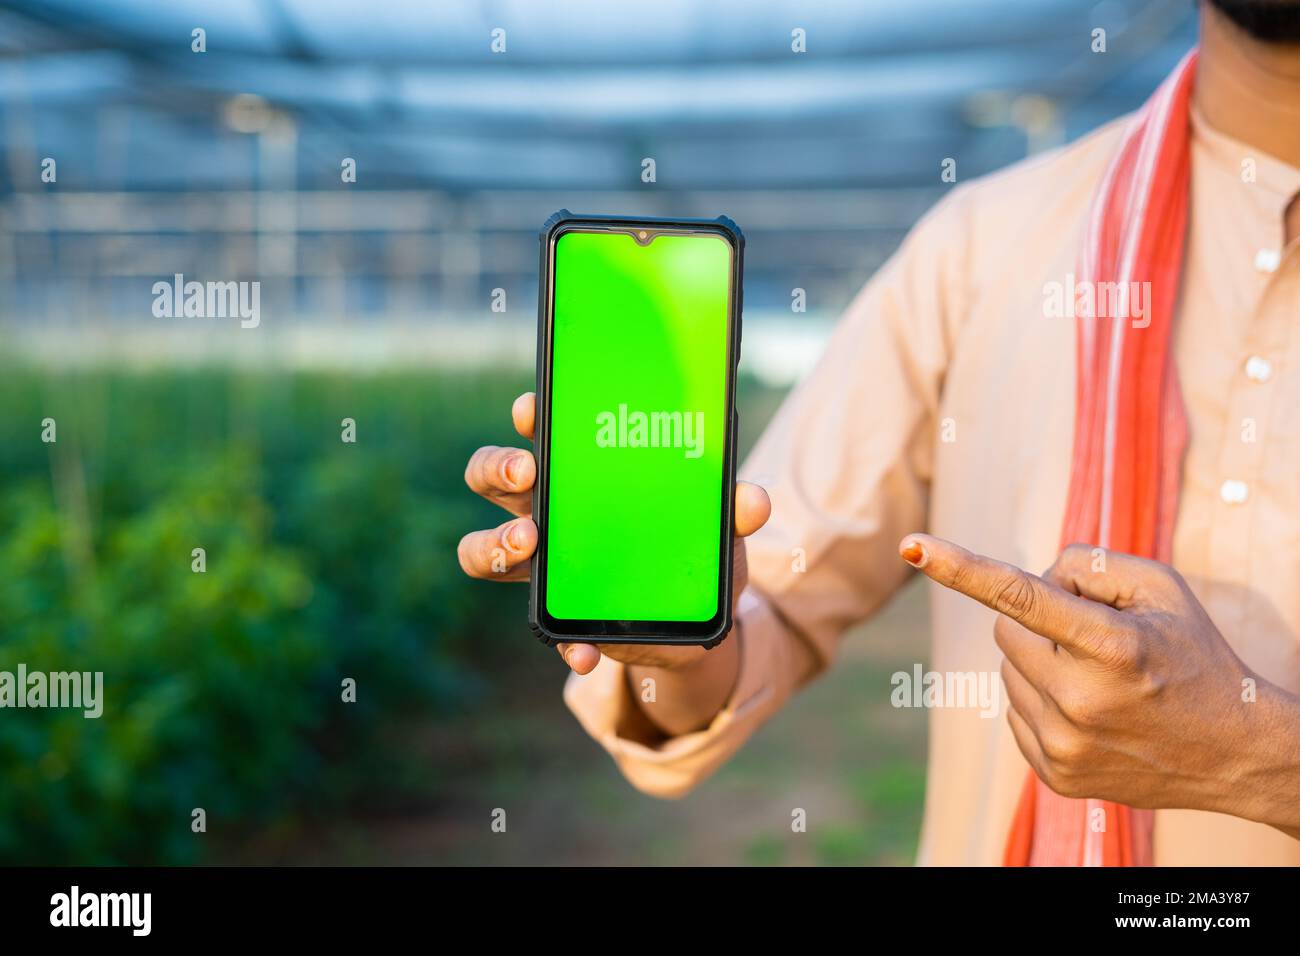 gros plan des mains d'agriculteurs montrant le téléphone mobile à écran vert en pointant le doigt en regardant la caméra à la serre - concept de promotion de l'agriculture Banque D'Images